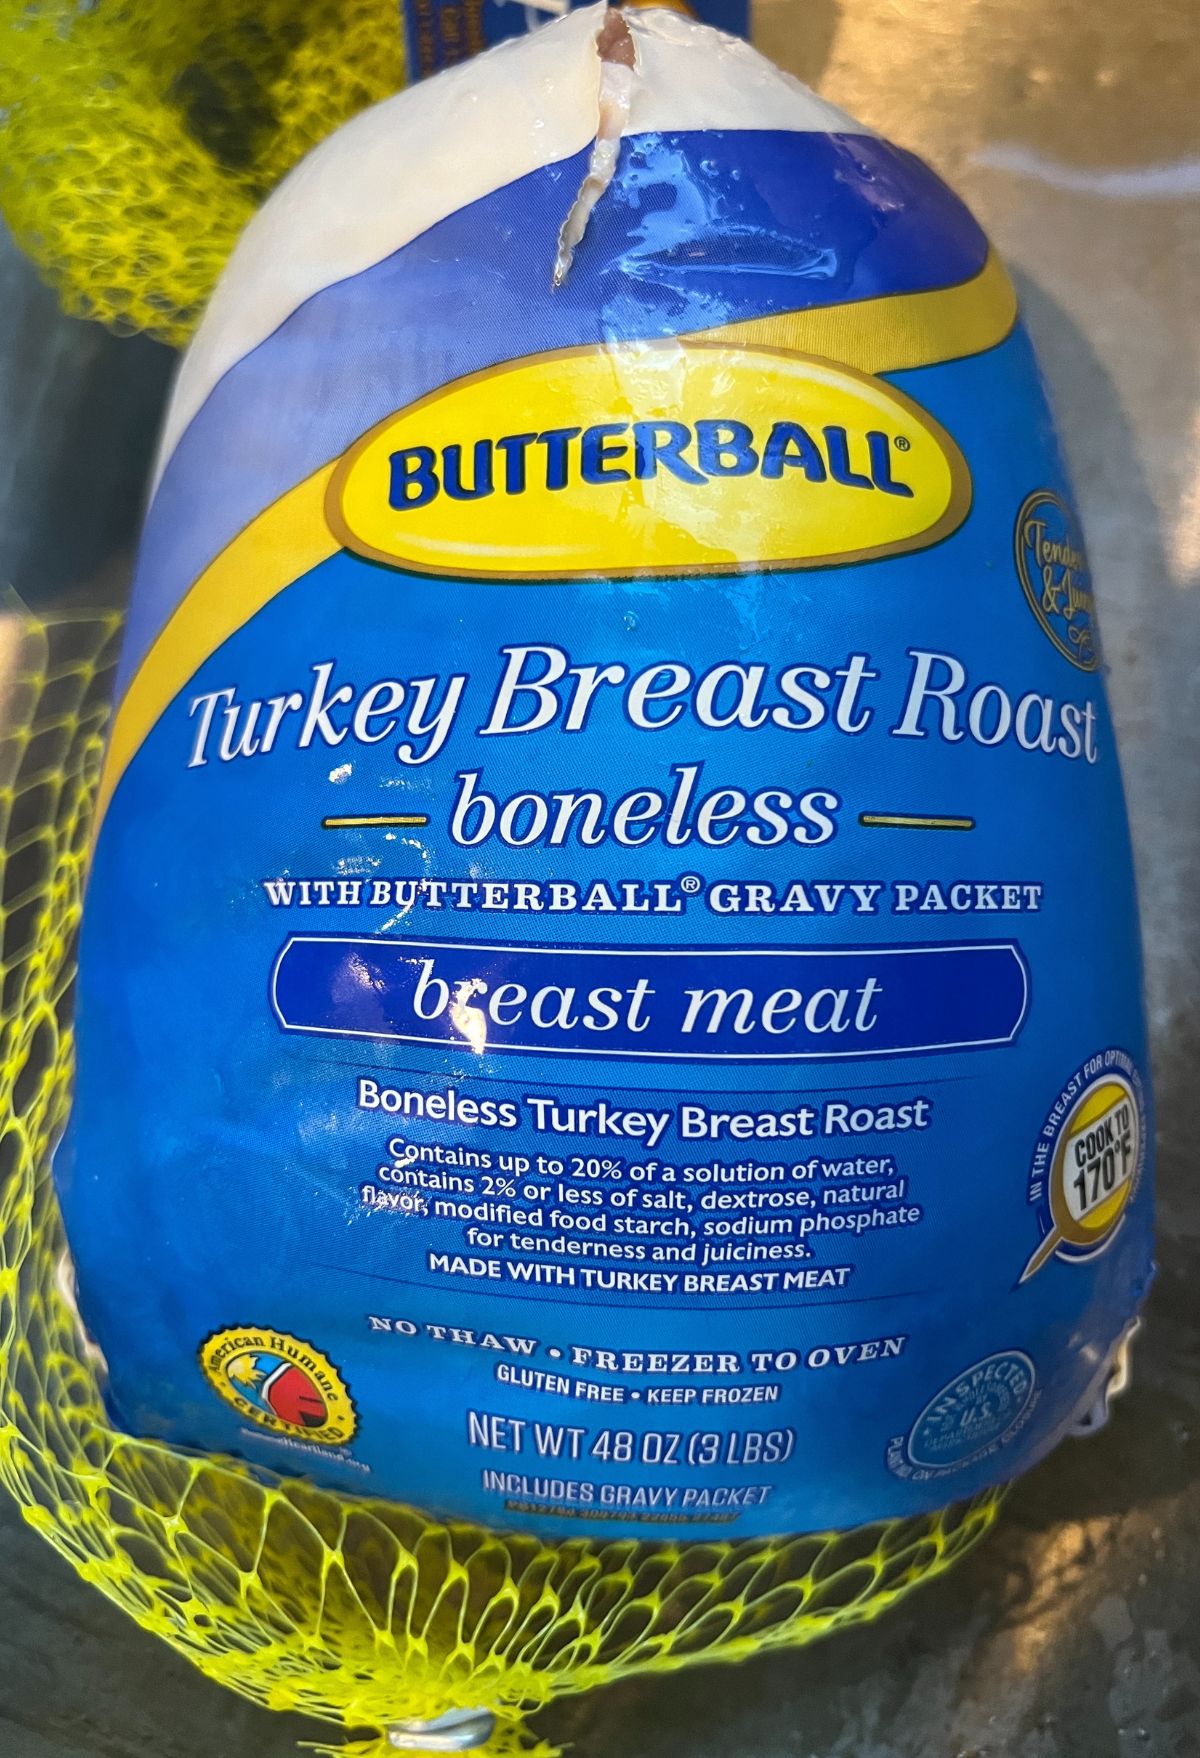 Butterball turkey breast roose boneless.